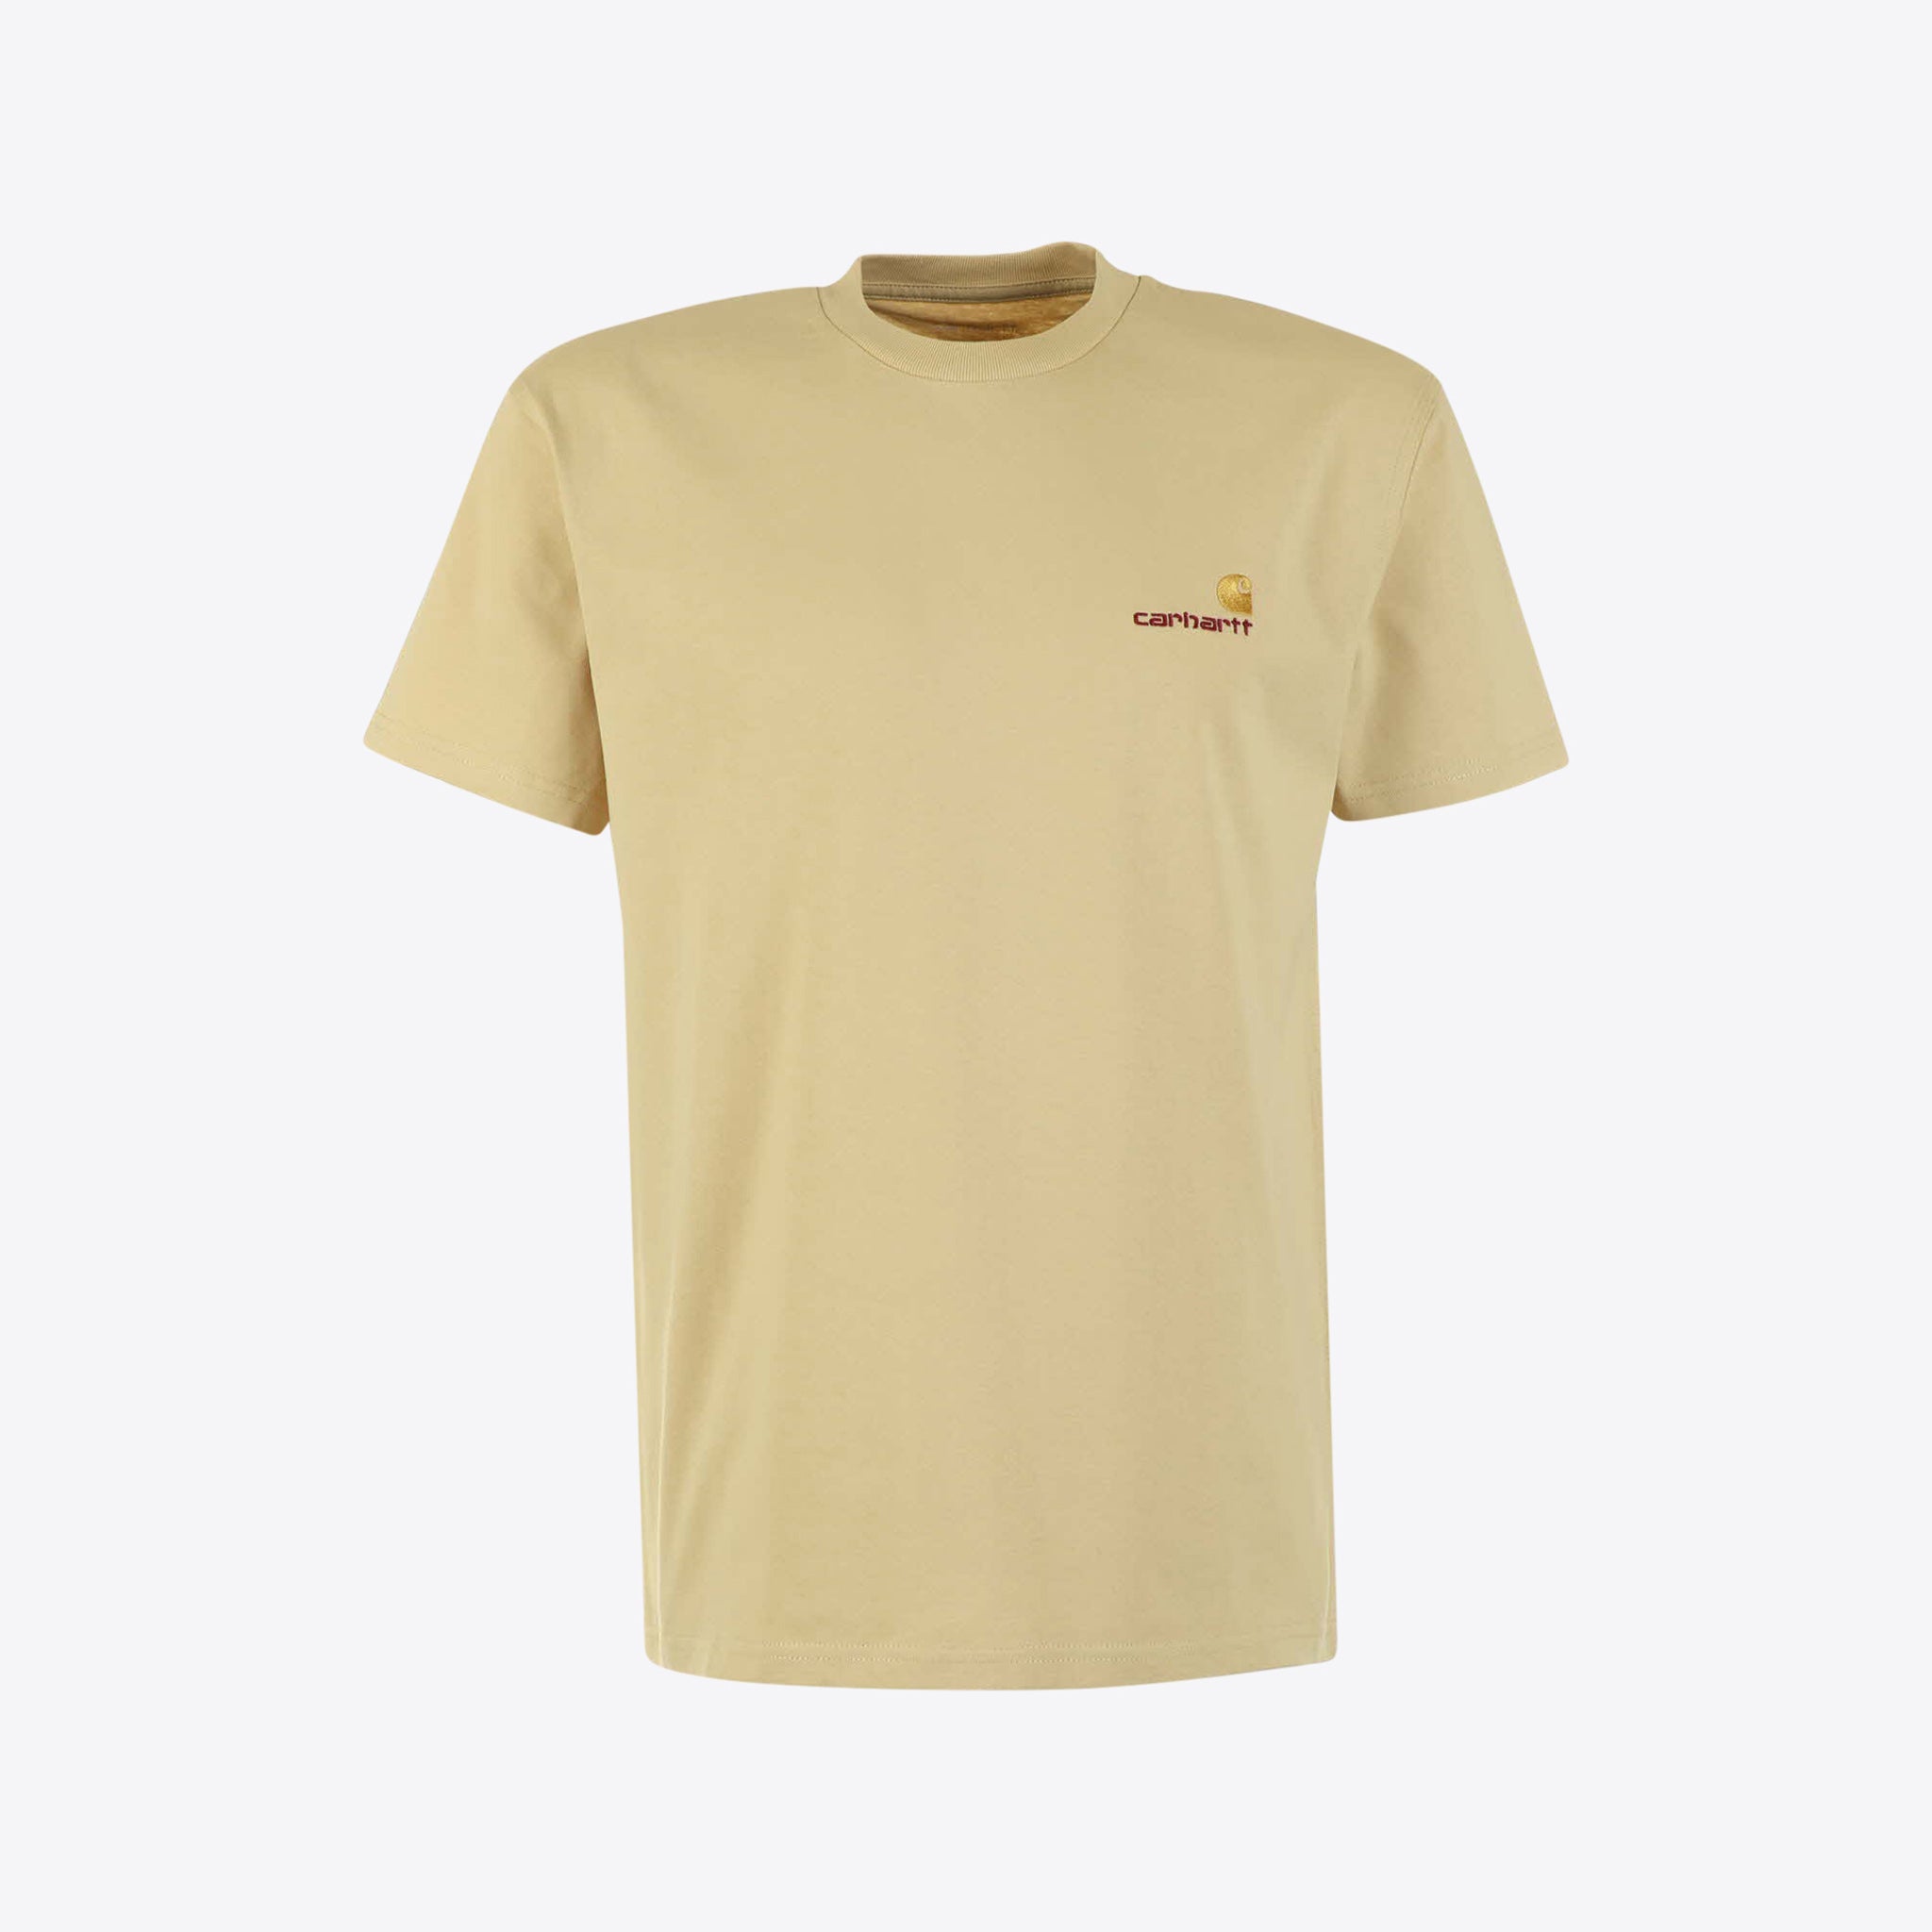 Carhartt Wip T-shirt Geel